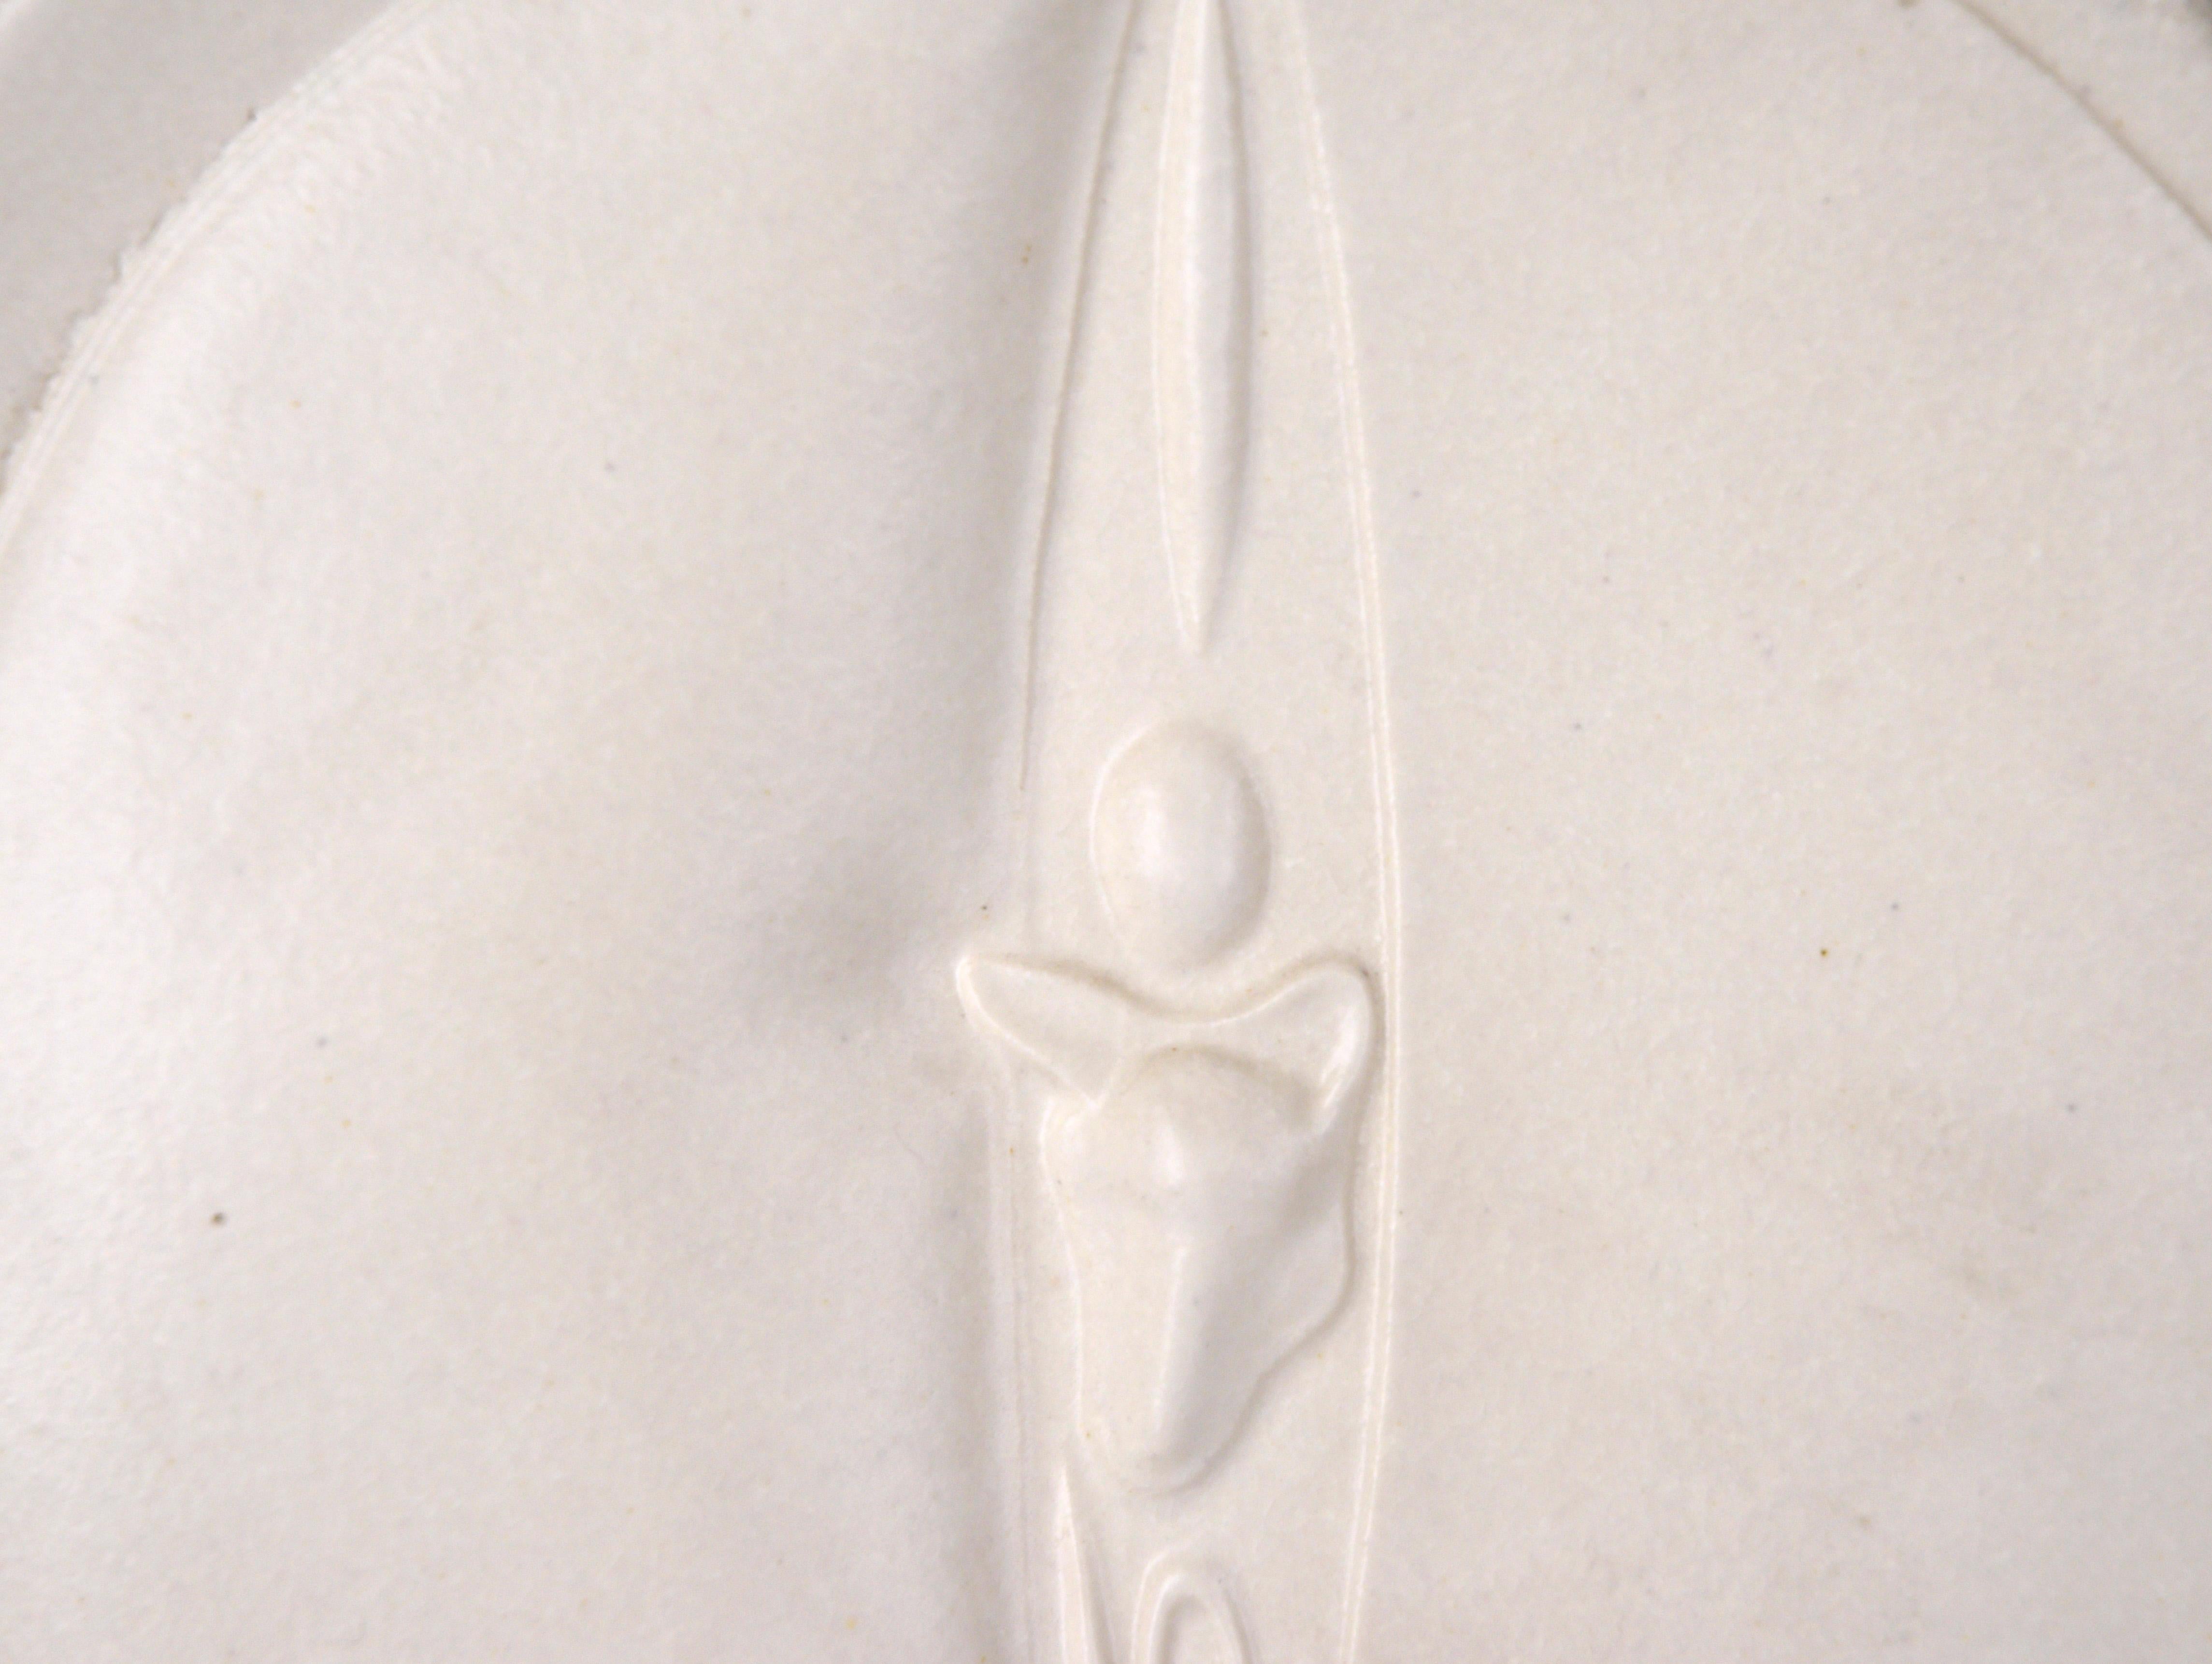 Sculpture en céramique abstraite minimaliste blanche

Sculpture organique et minimaliste de 